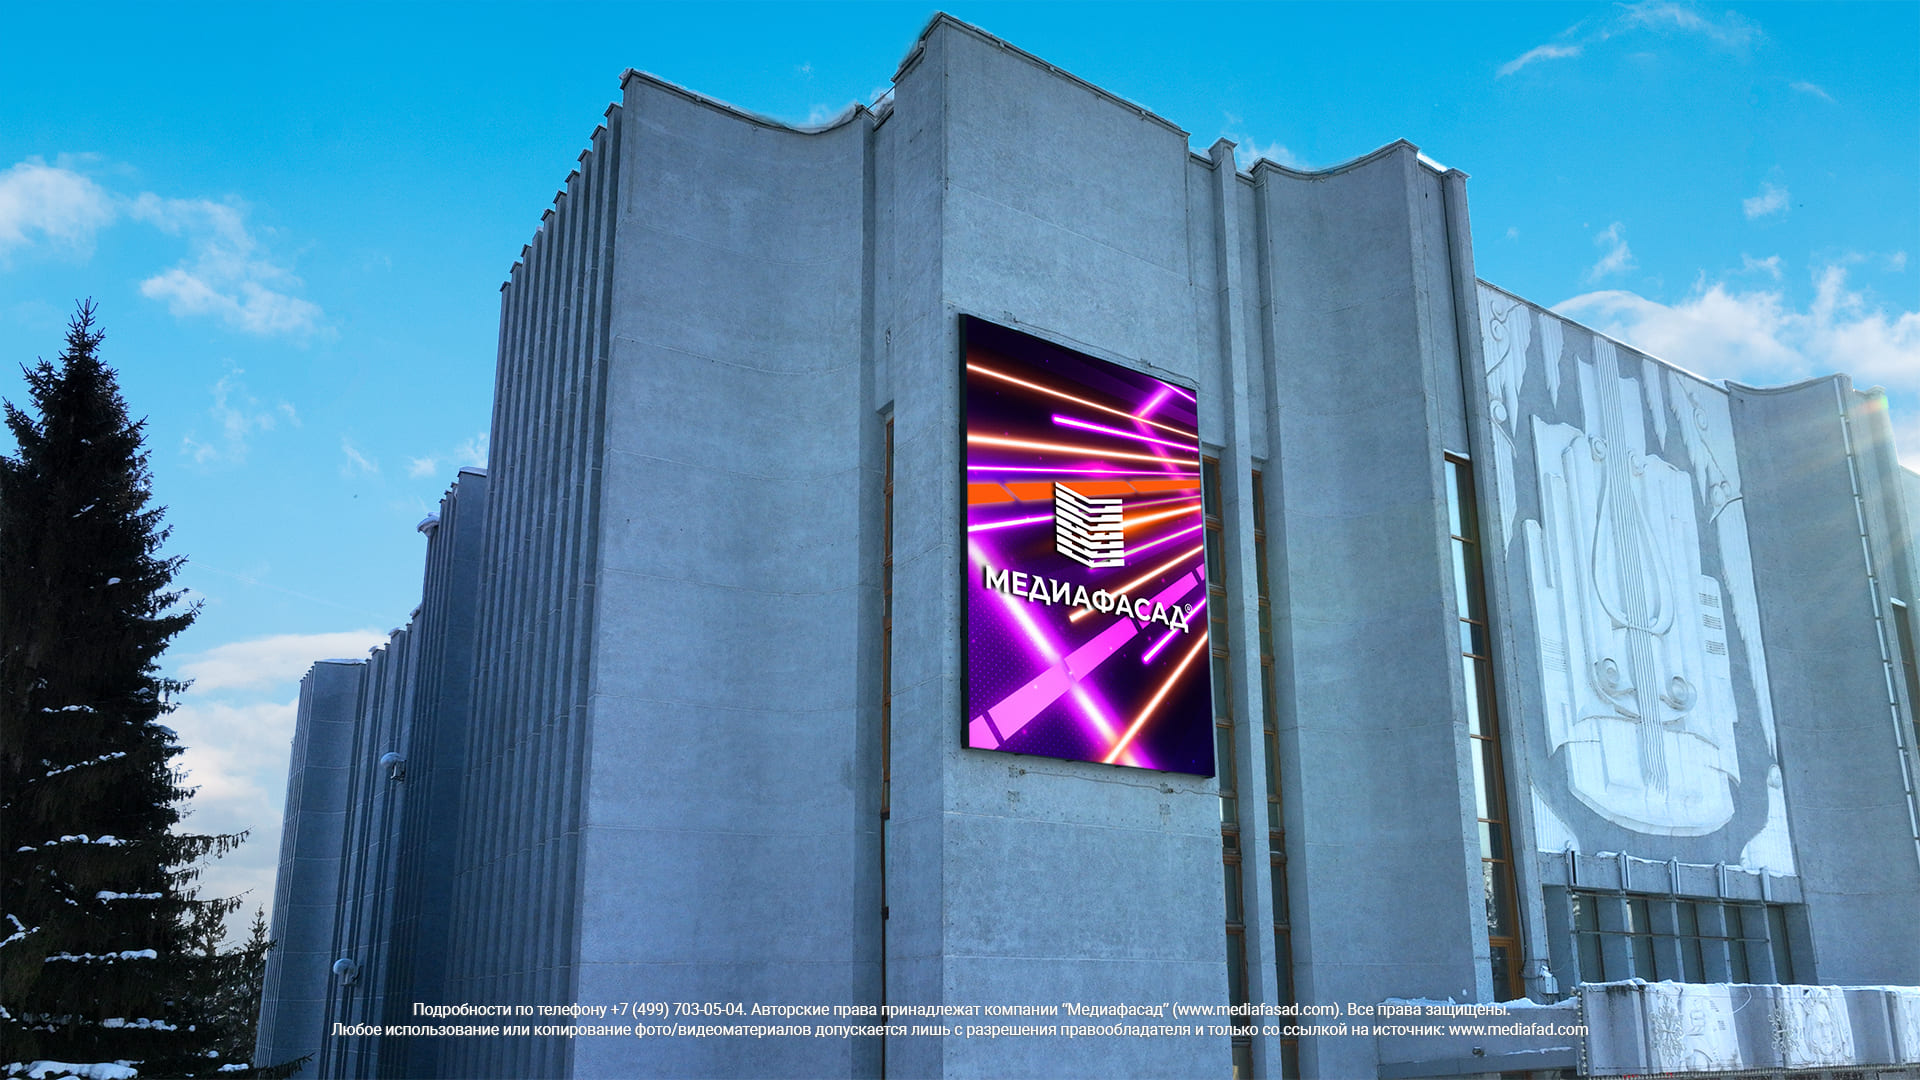 Светодиодный экран на фасад здания, Кемерово, ГАУК «Филармония Кузбасса», фото 1